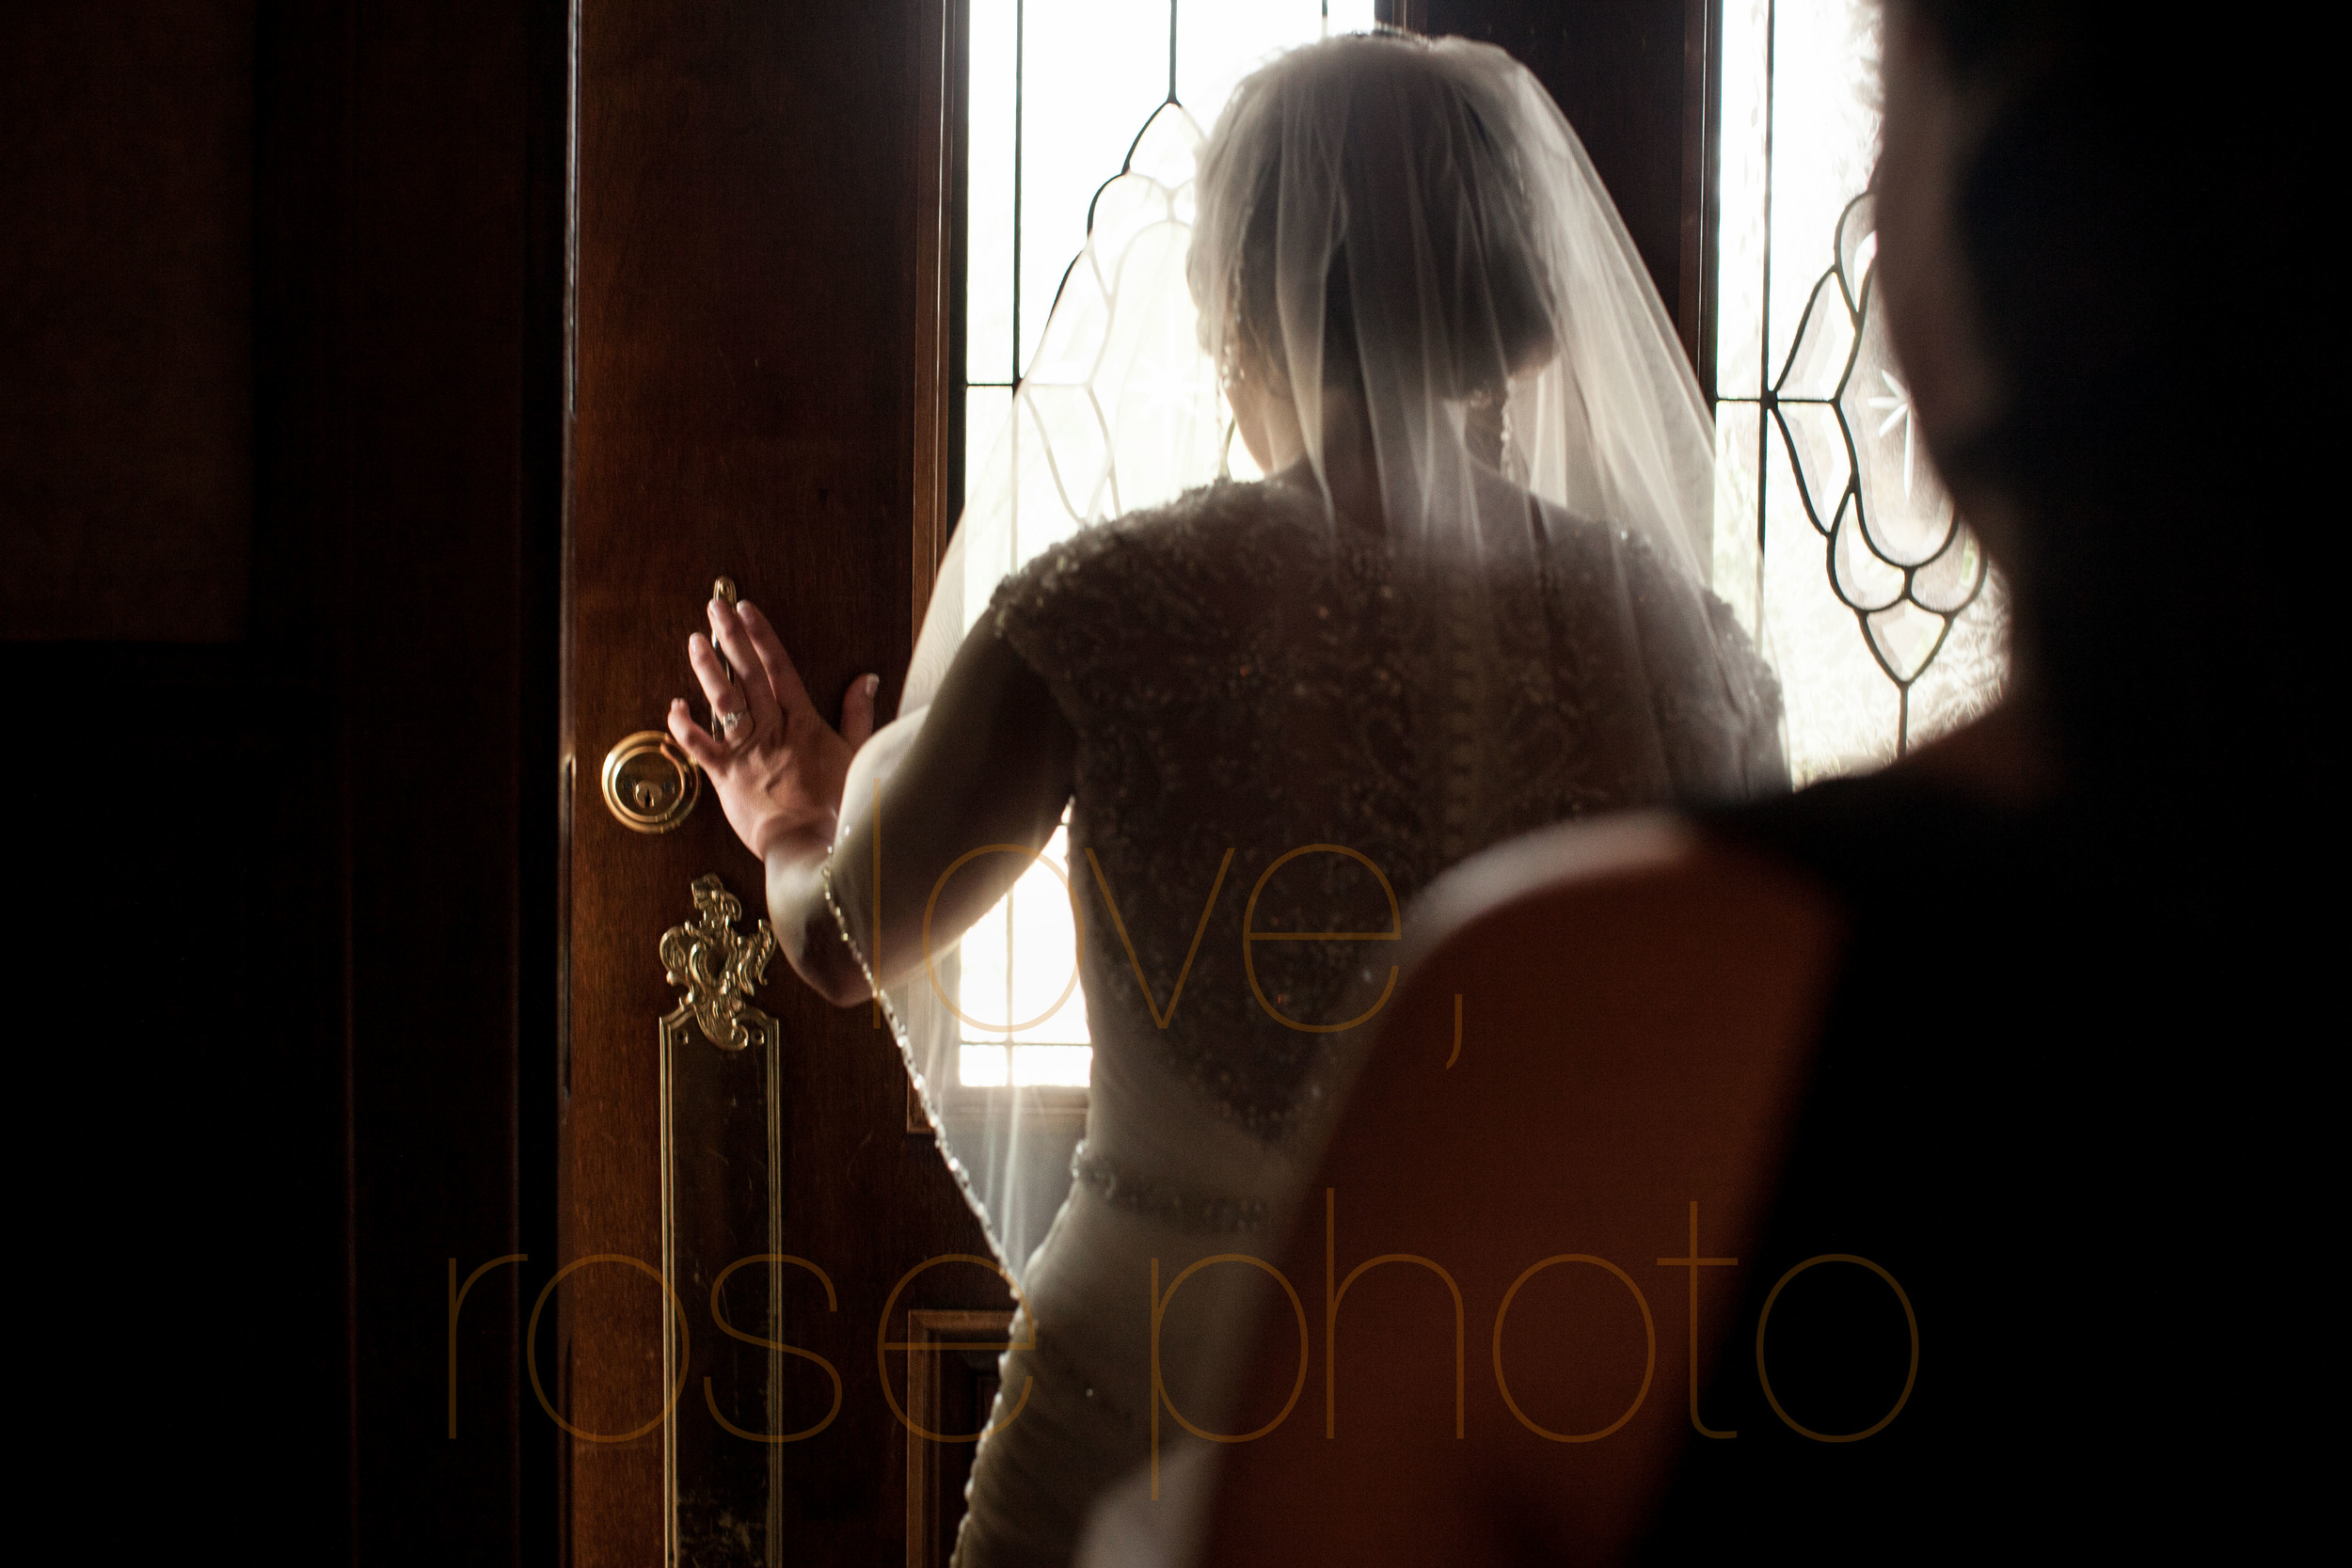 ellen + bryan chicago wedding joliet james healy mansion portrait lifestyle photojournalist photographer -003.jpg